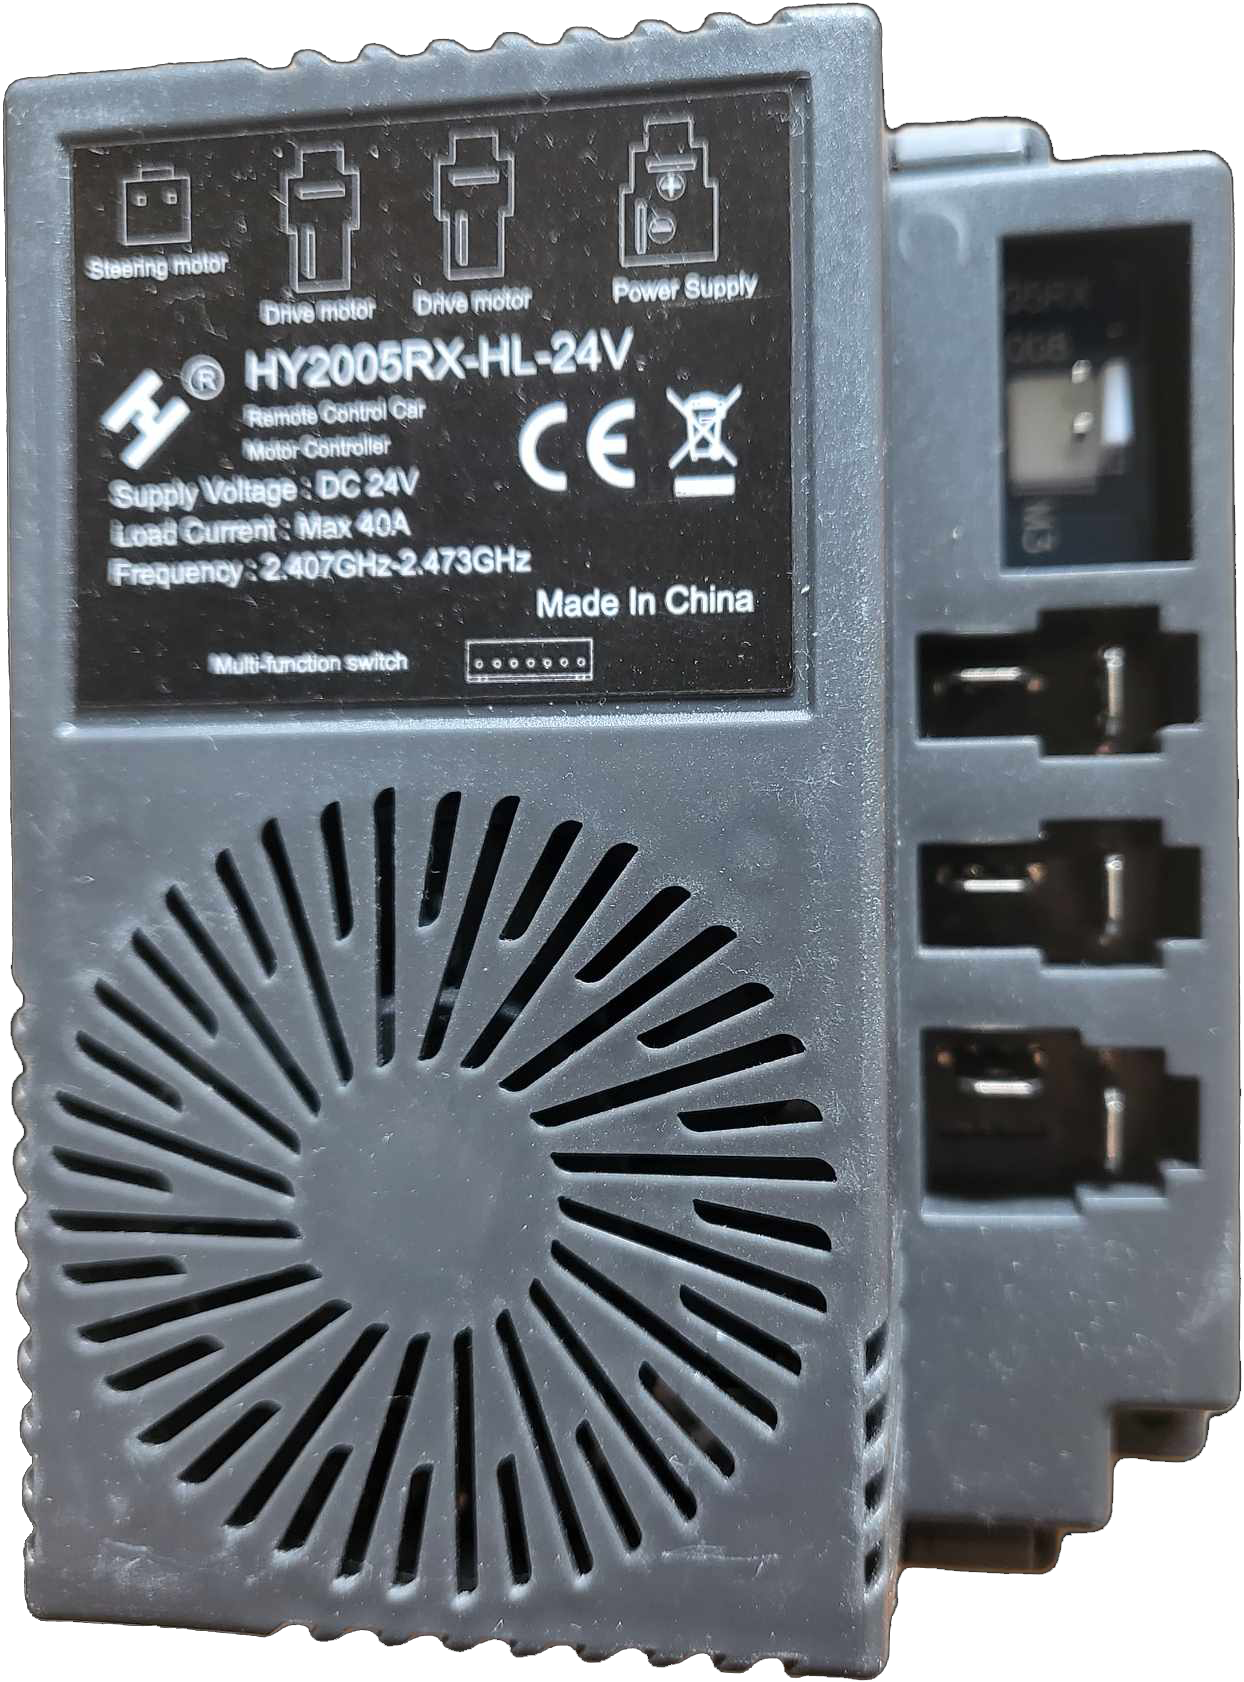 HY2005RX-HL-24V vezérlő panel